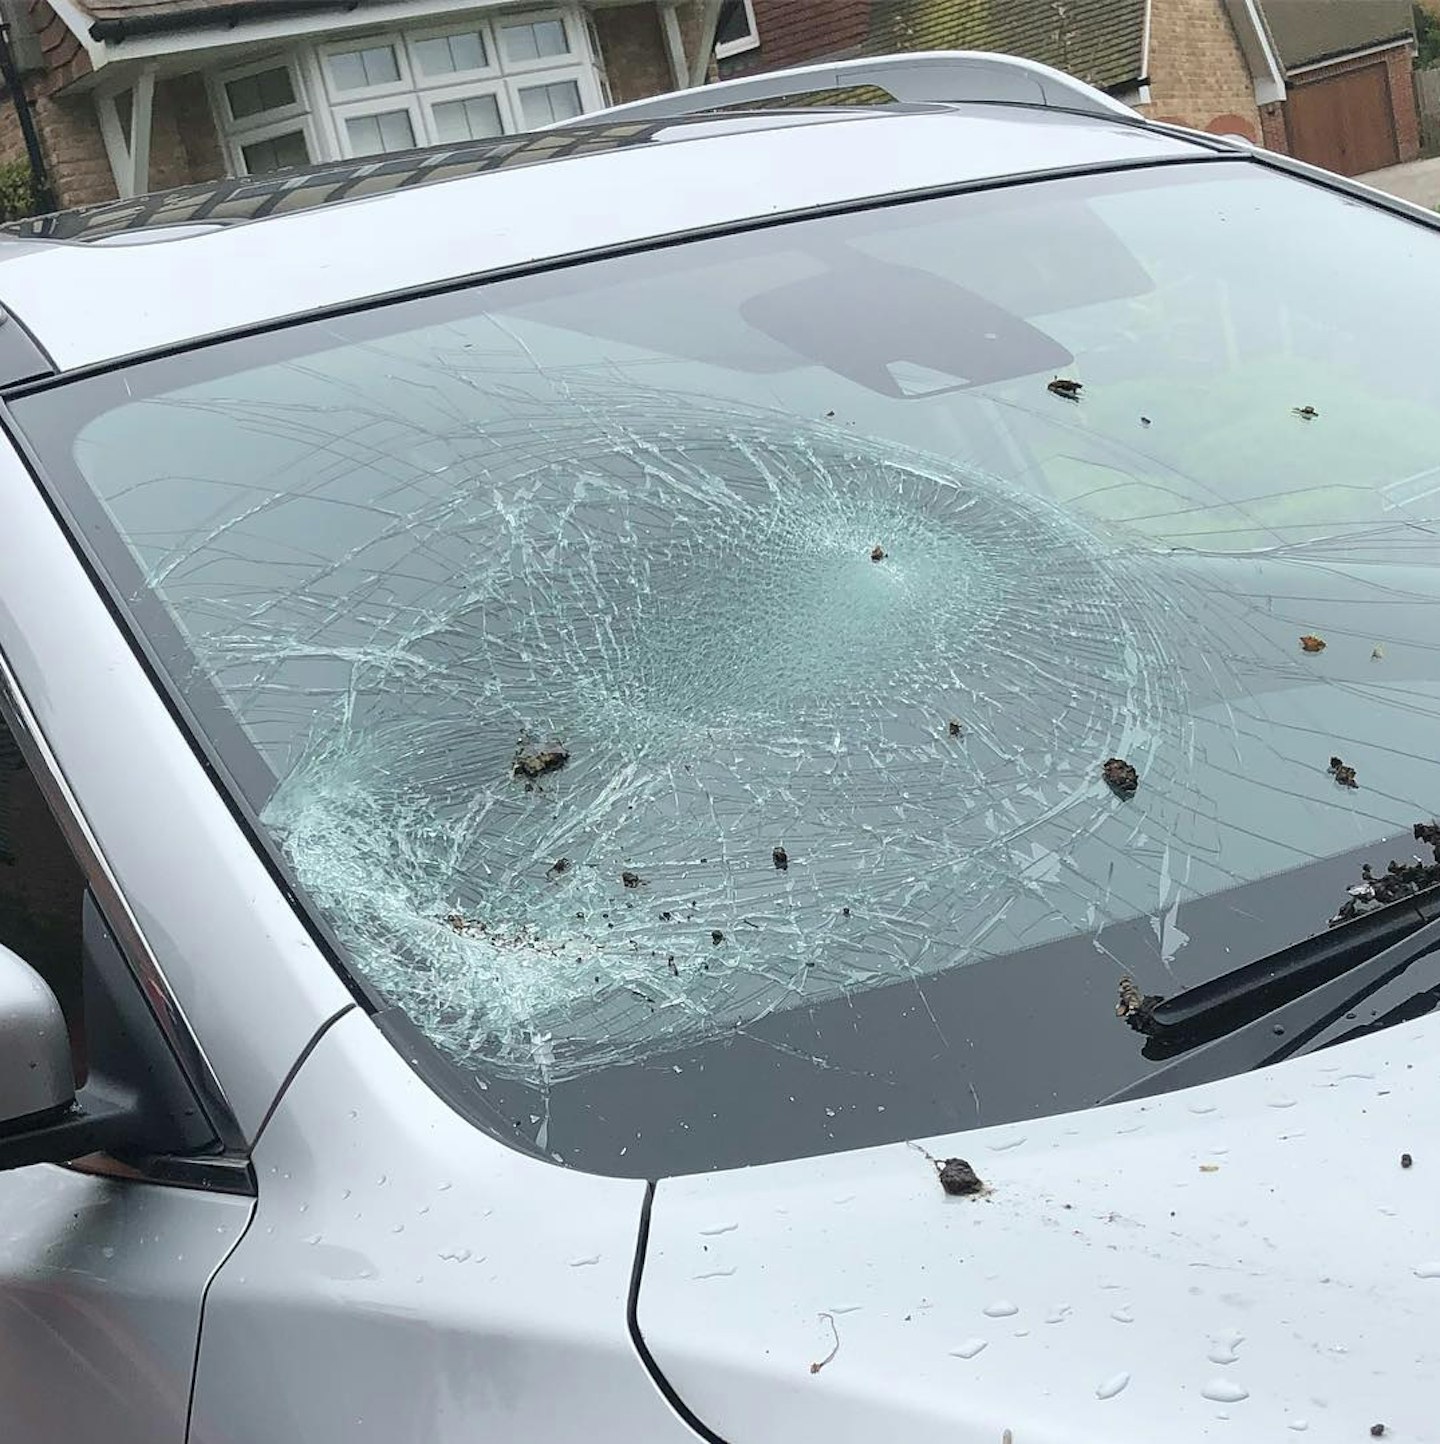 Kerry Katona smashed car